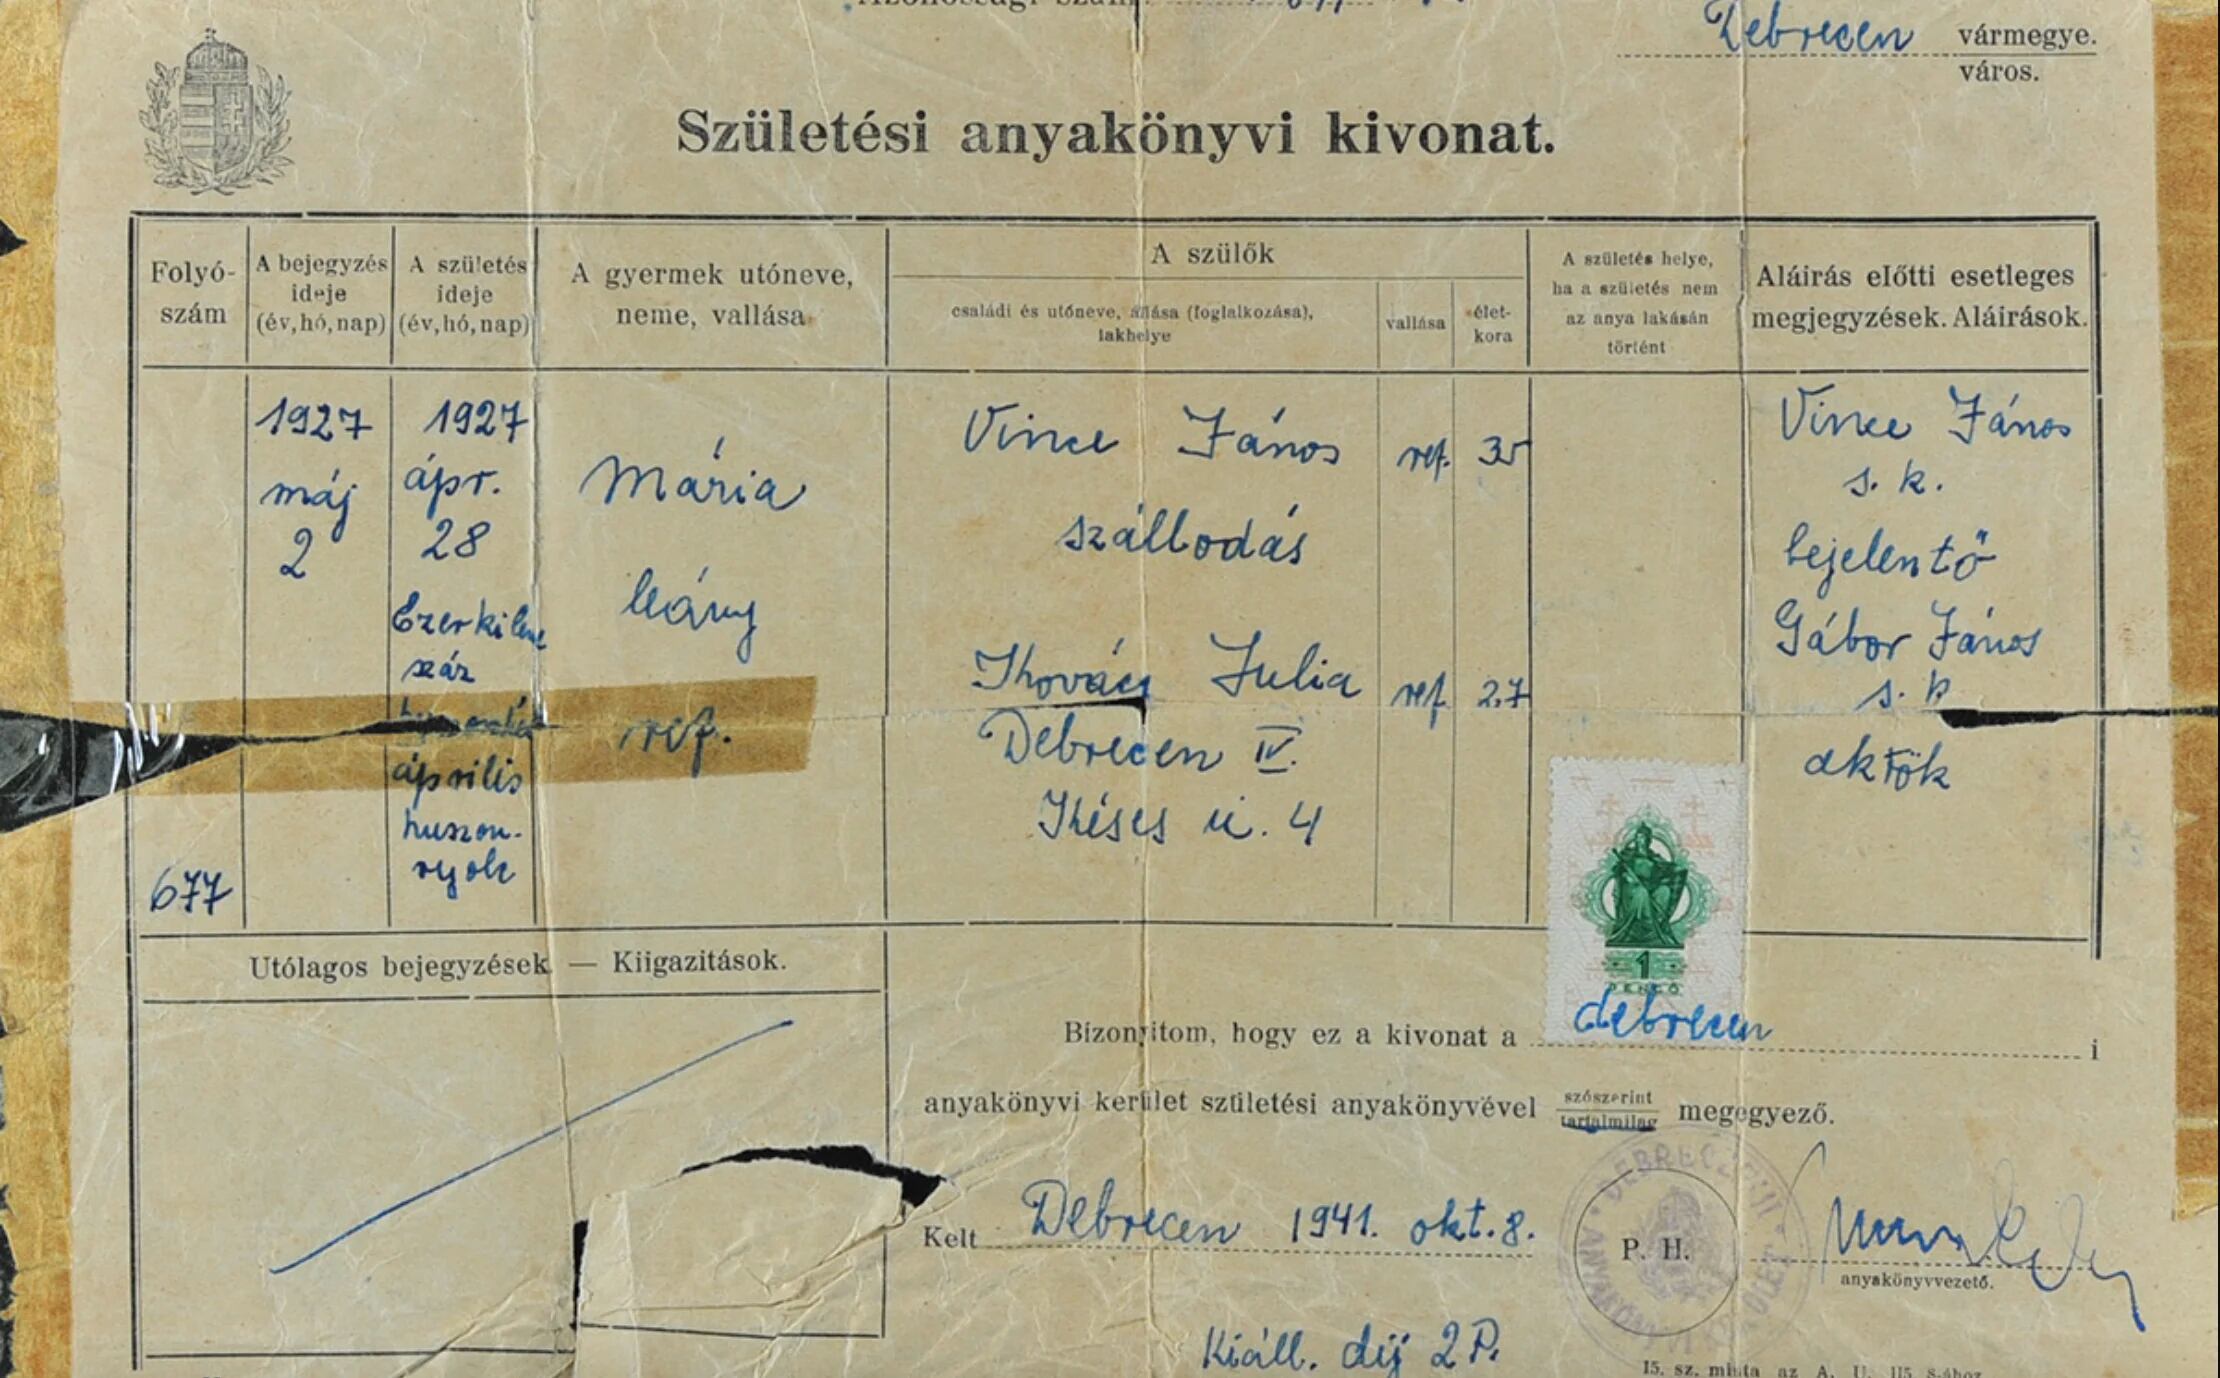 Certificado de nacimiento falsificado a nombre de Maria Vince, quien en realidad se llamaba Eva Billiczer. (Yad Vashem)